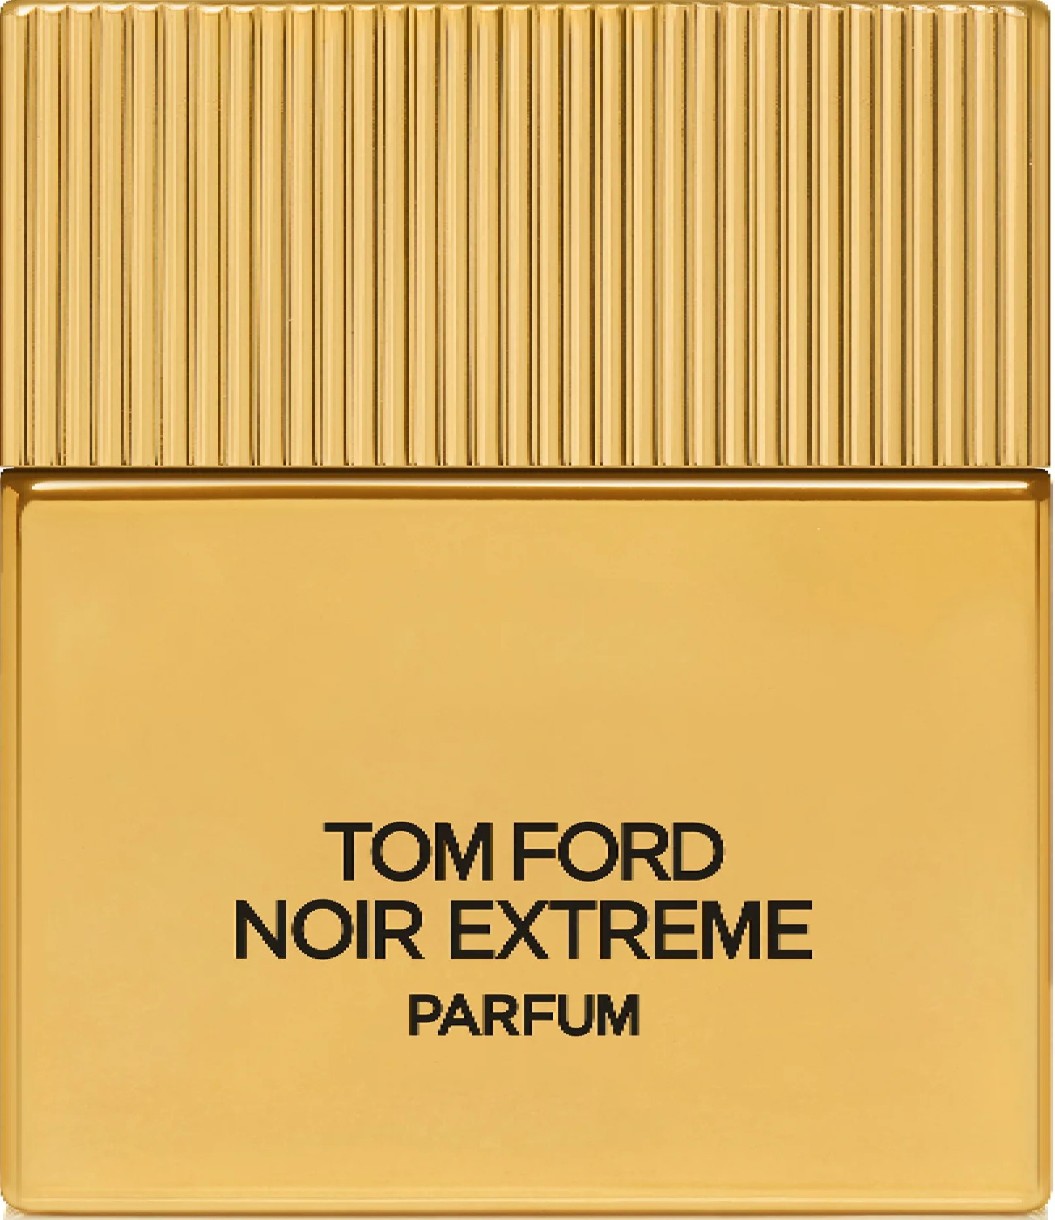 Парфюм для него Tom Ford Noir Extreme Parfum 50ml